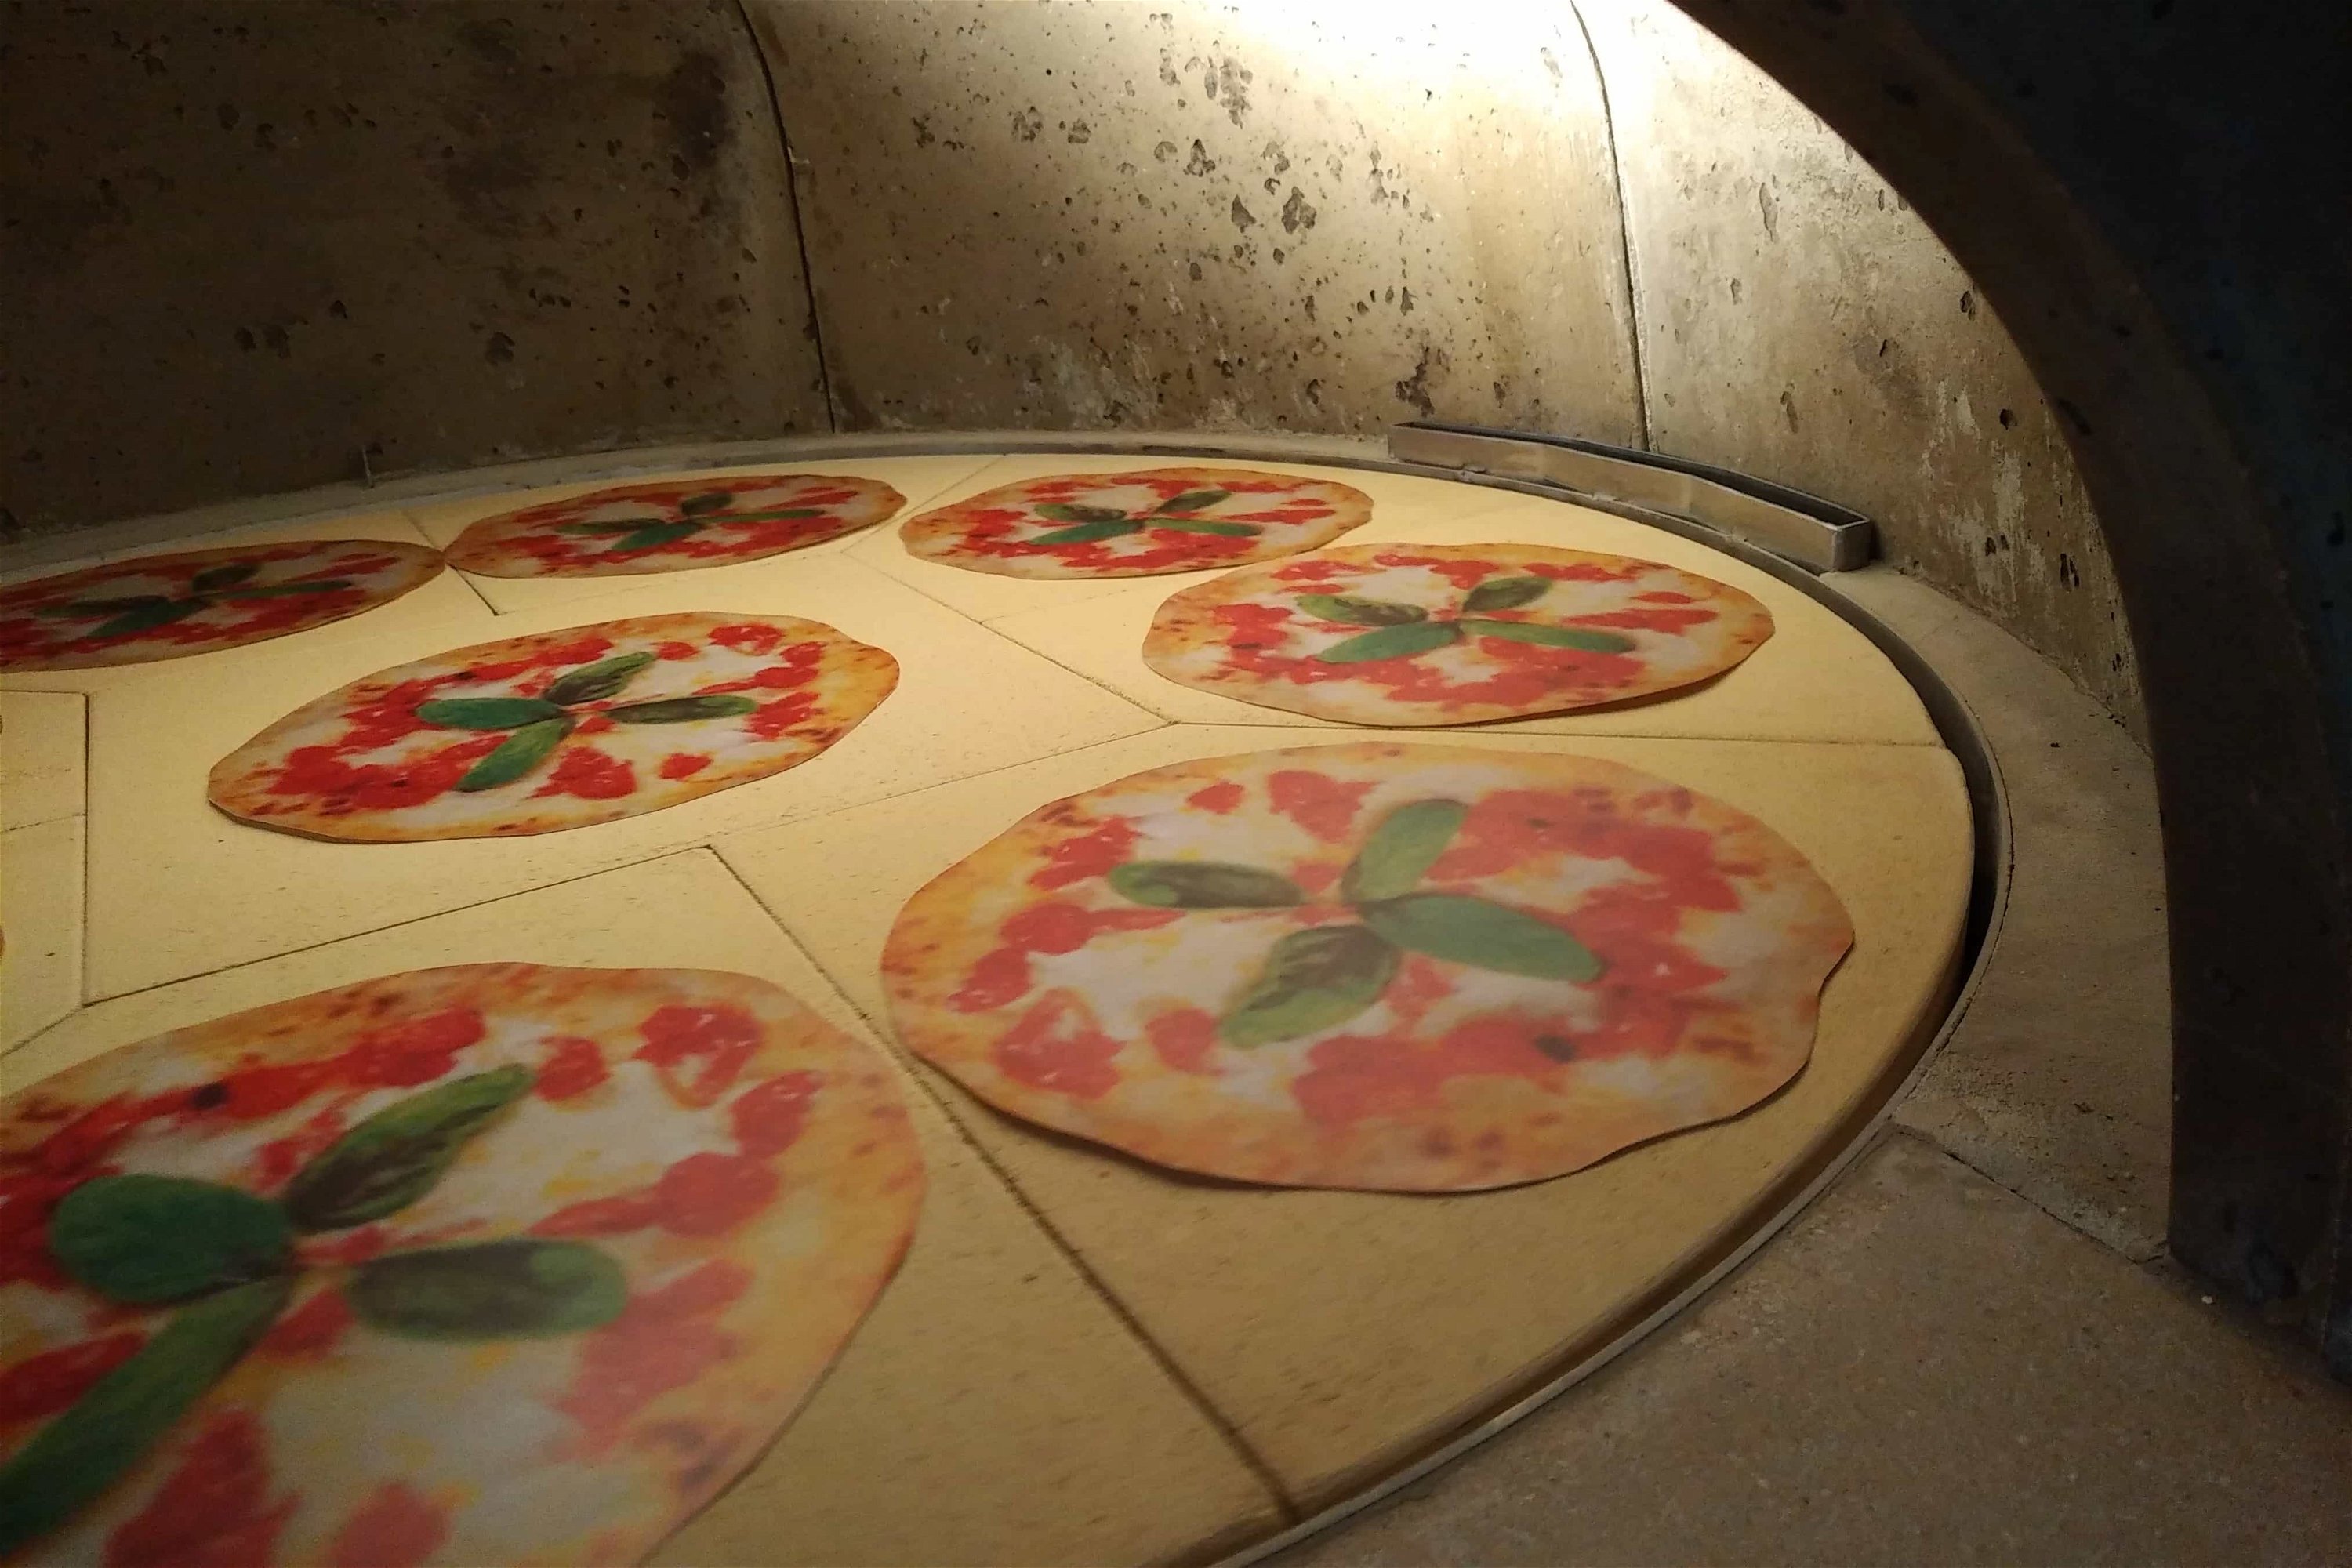 Holzbackofen Valoriani Rotativo: rotierender Pizzaofen, rund, 130cm Durchmesser, für Gastro